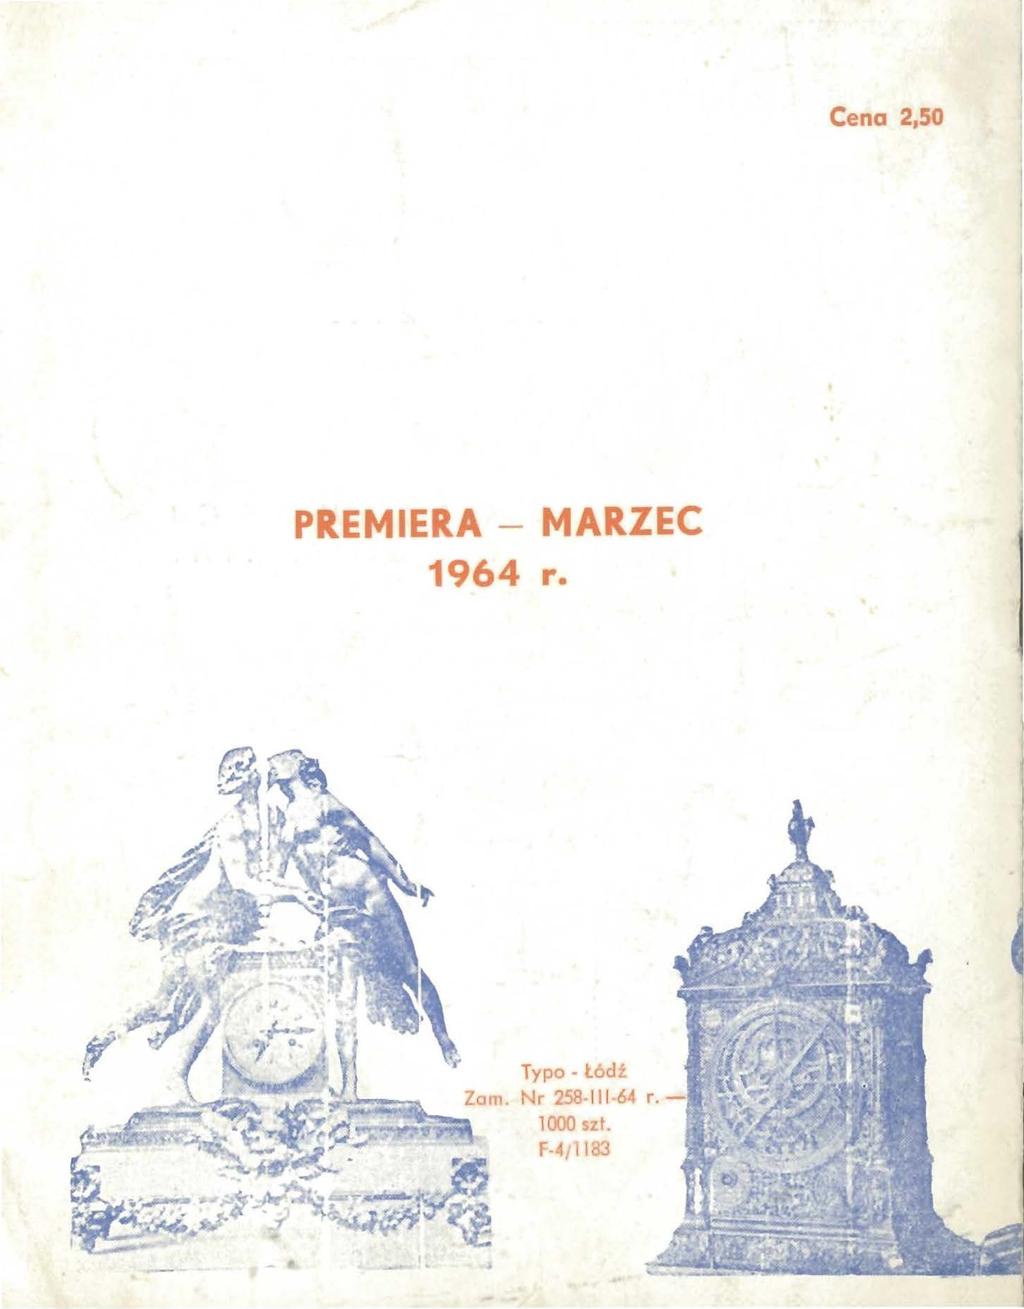 Cena 2,50 PREMIERA - MARZEC 1964